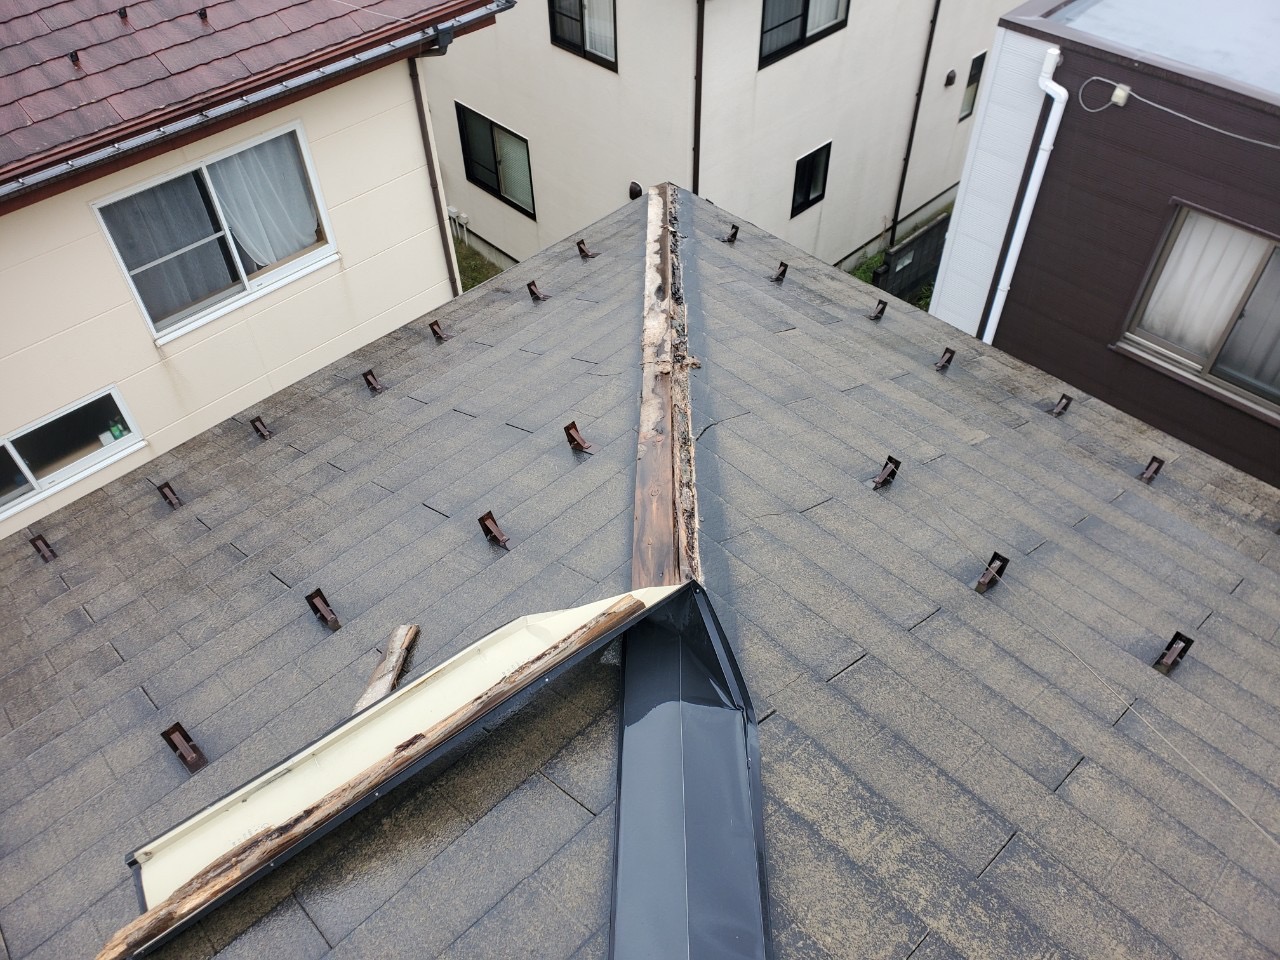 新潟市西区にて棟板金が飛散したので屋根上を見て欲しいとご相談を頂きました